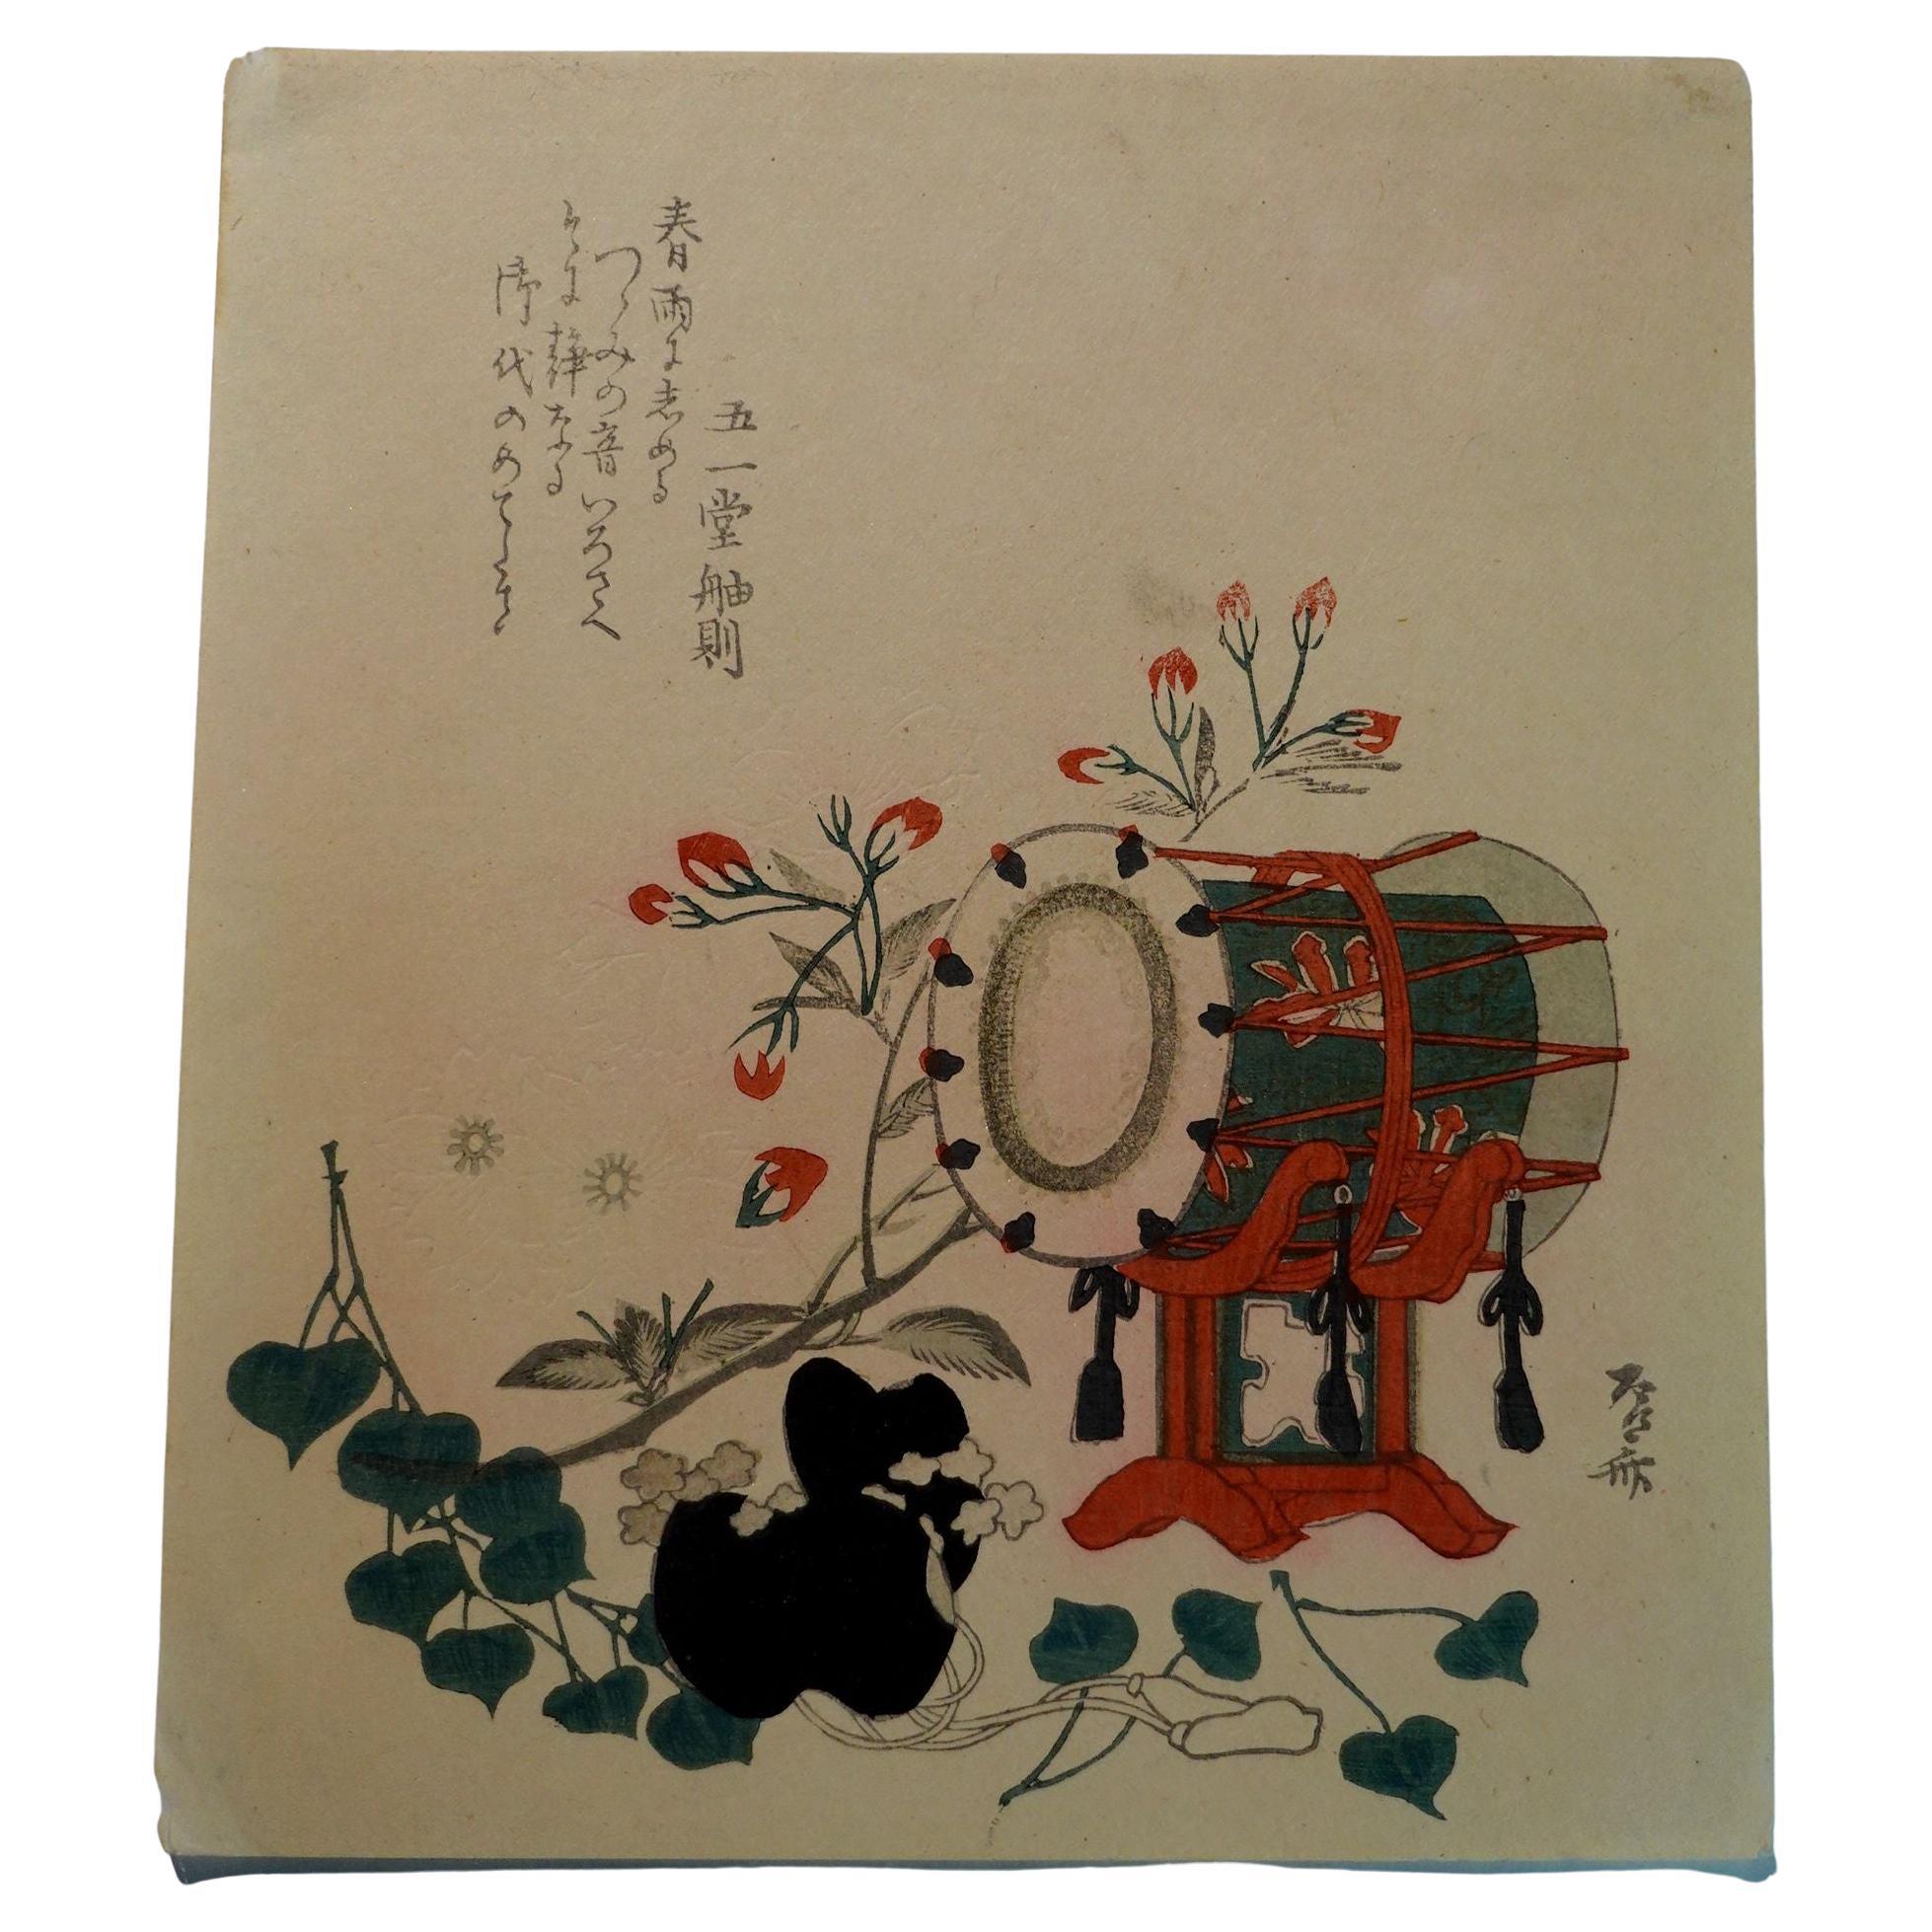 Gravure sur bois japonaise de Hokusai Katsushika, 葛飾北齋 (1760~1849)